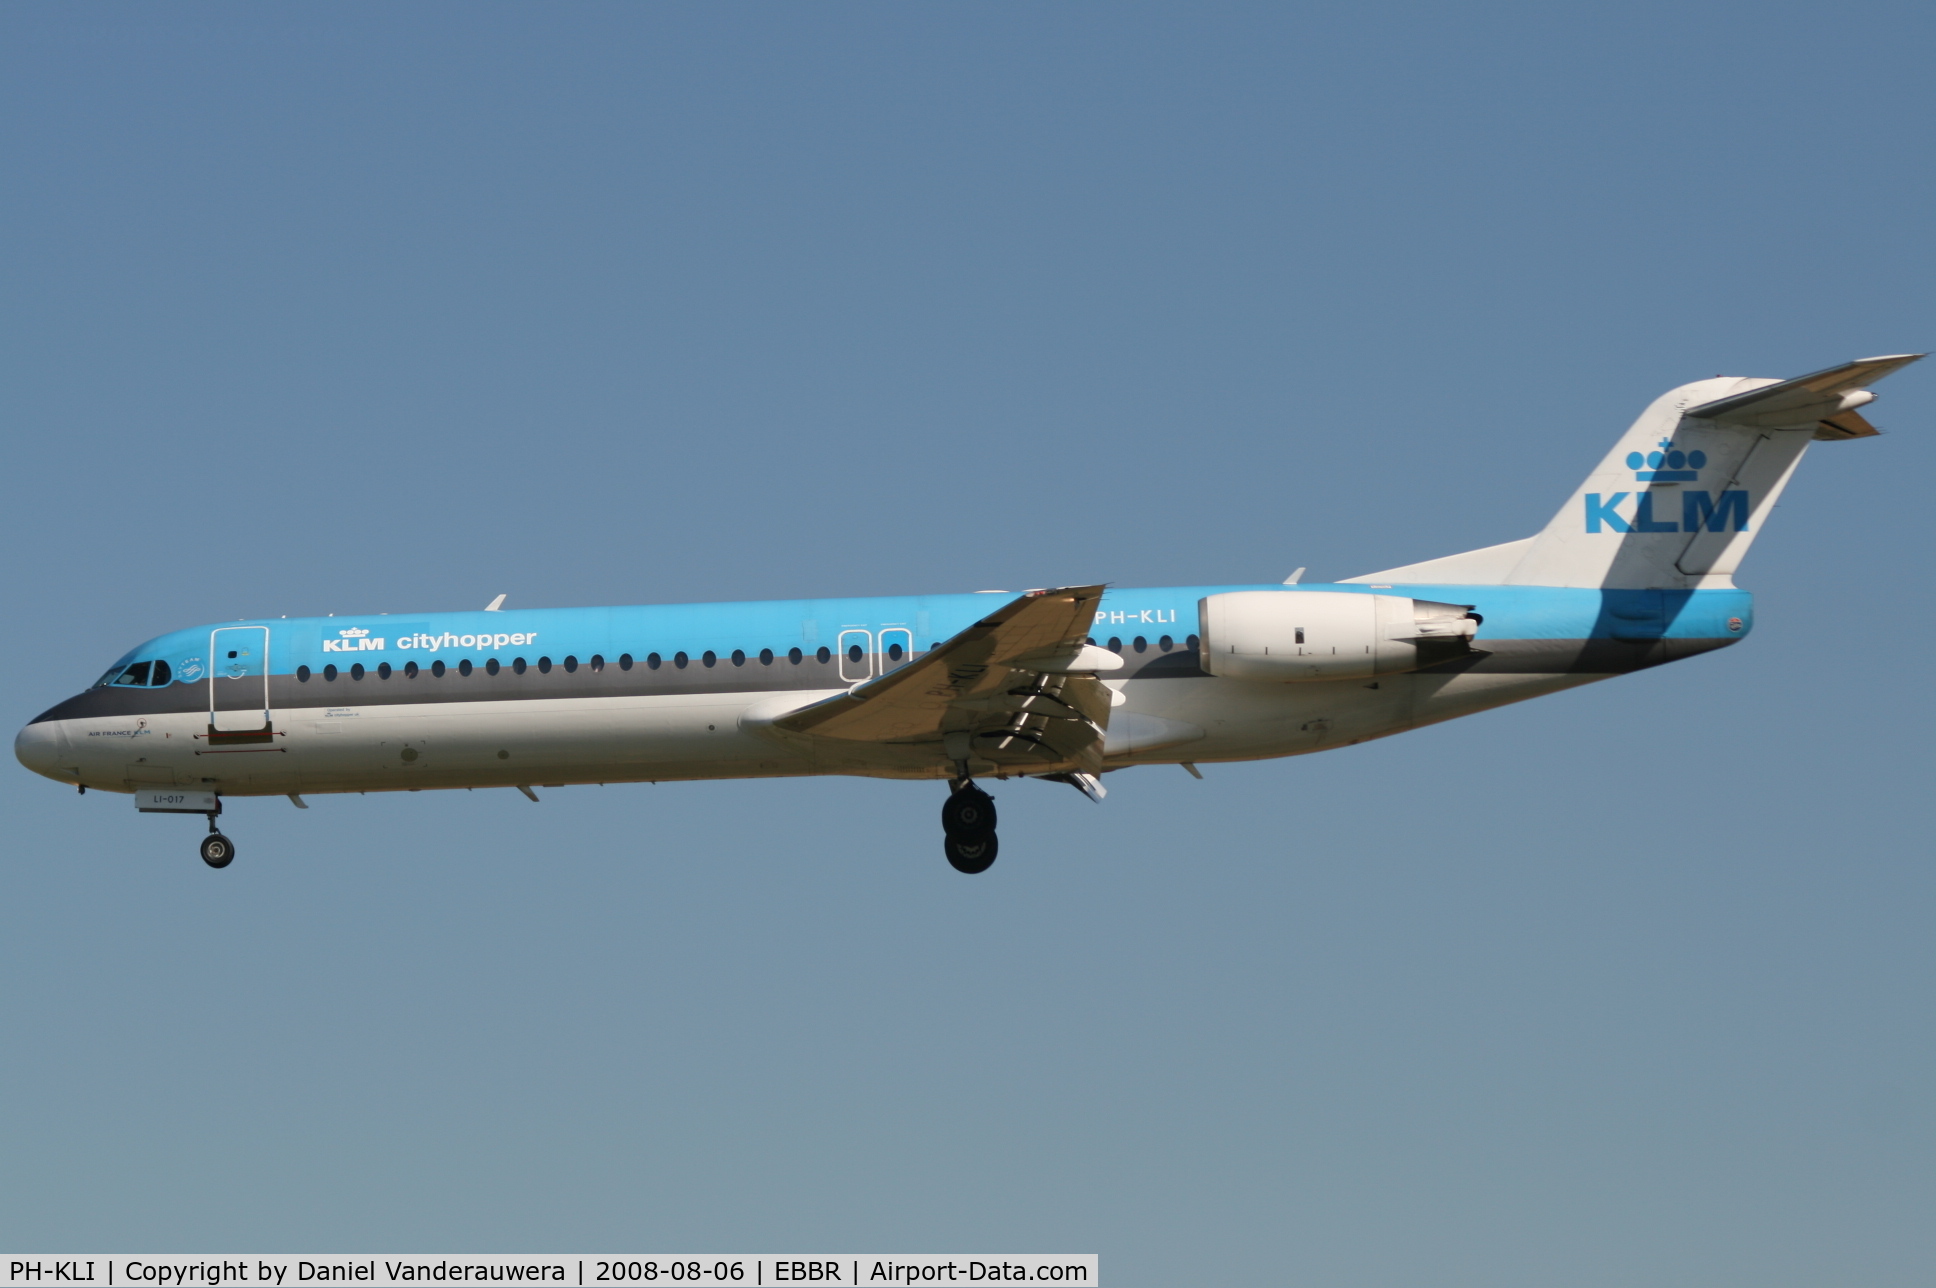 PH-KLI, 1989 Fokker 100 (F-28-0100) C/N 11273, arrival of flight KL1723 to rwy 25L